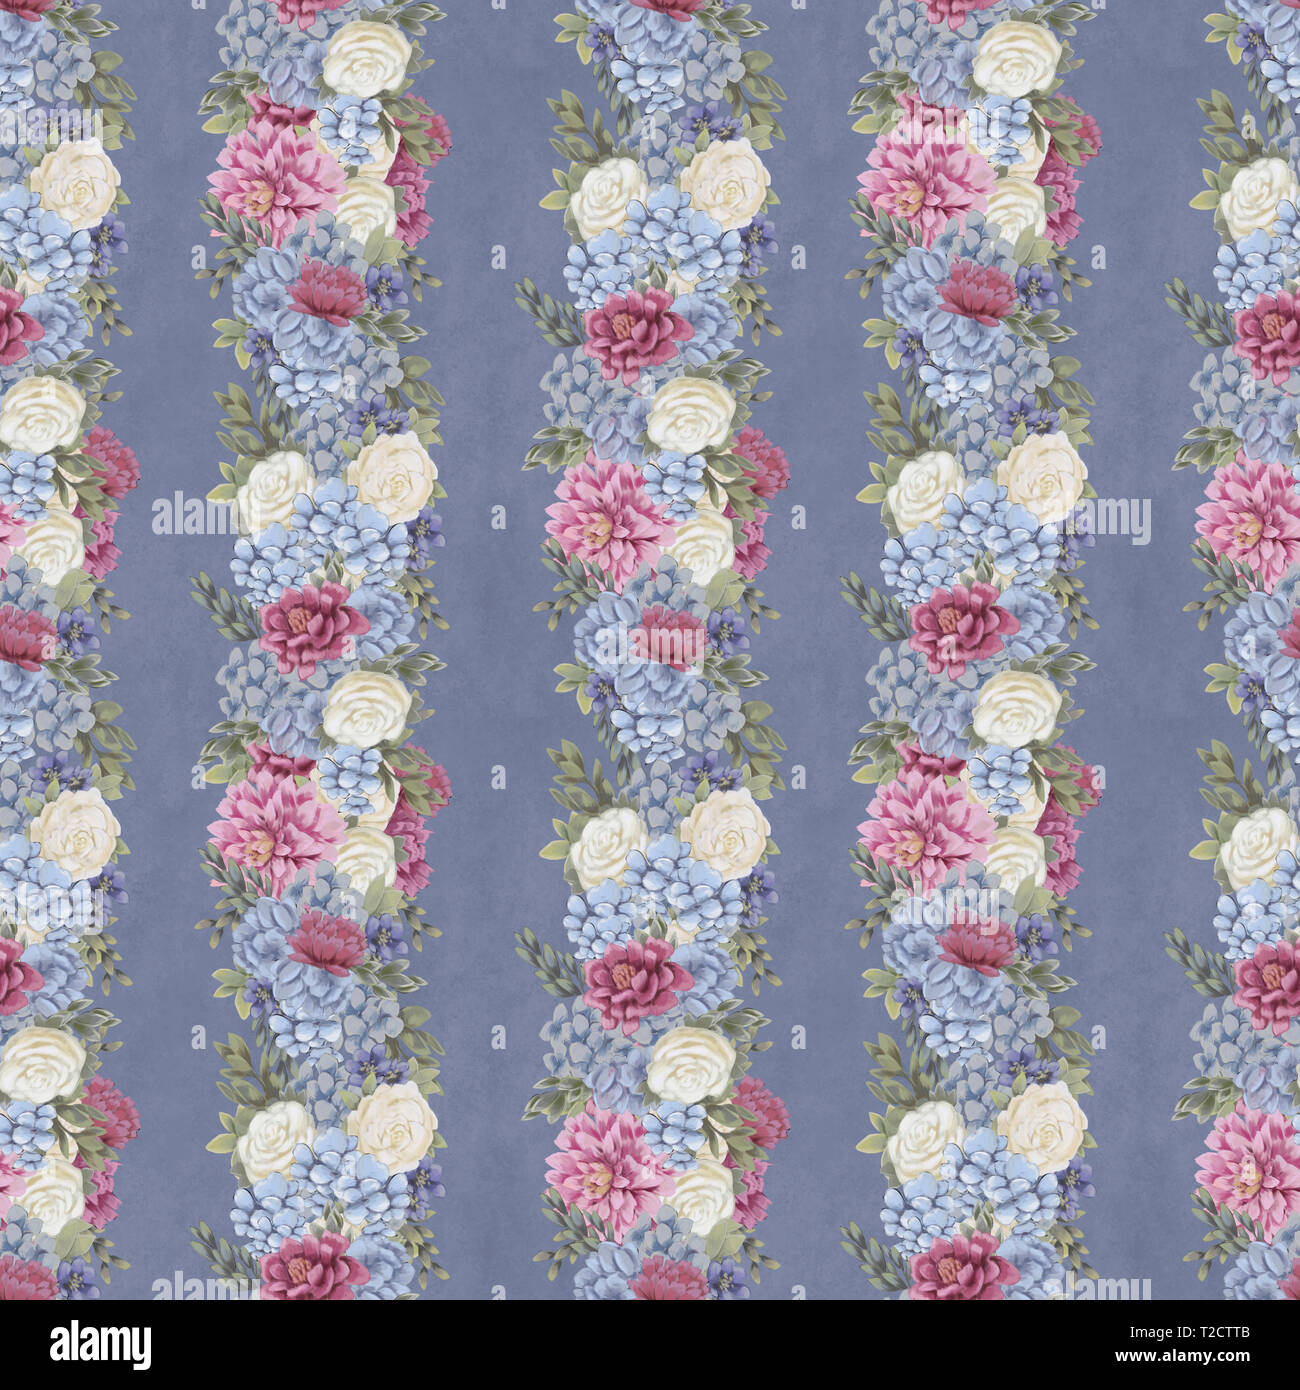 Vintage Floral pattern transparente. Des fleurs dessinées à la main pour le tissu, l'impression ou web Banque D'Images